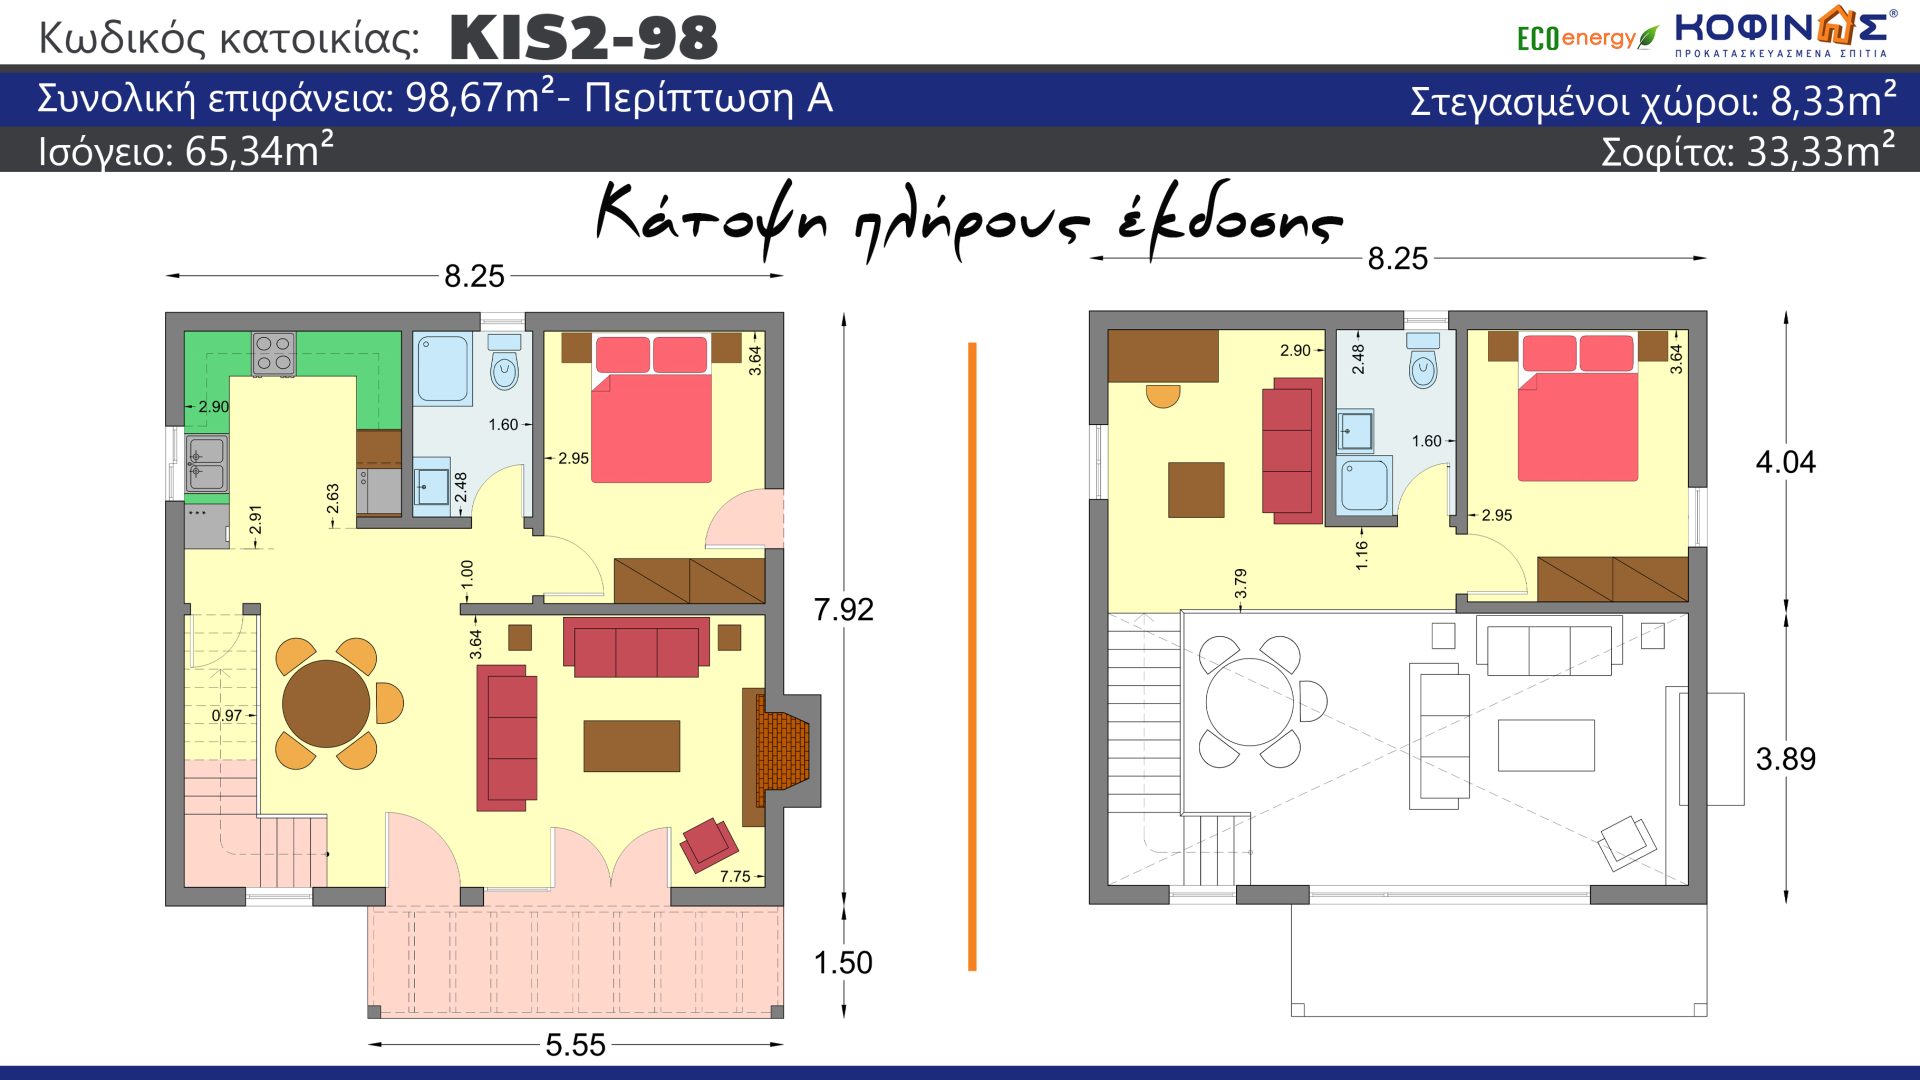 Ισόγεια Κατοικία με σοφίτα KIS2-98, συνολικής επιφάνειας 98,67 τ.μ. , συνολική επιφάνεια στεγασμένων χώρων 8.33 τ.μ.